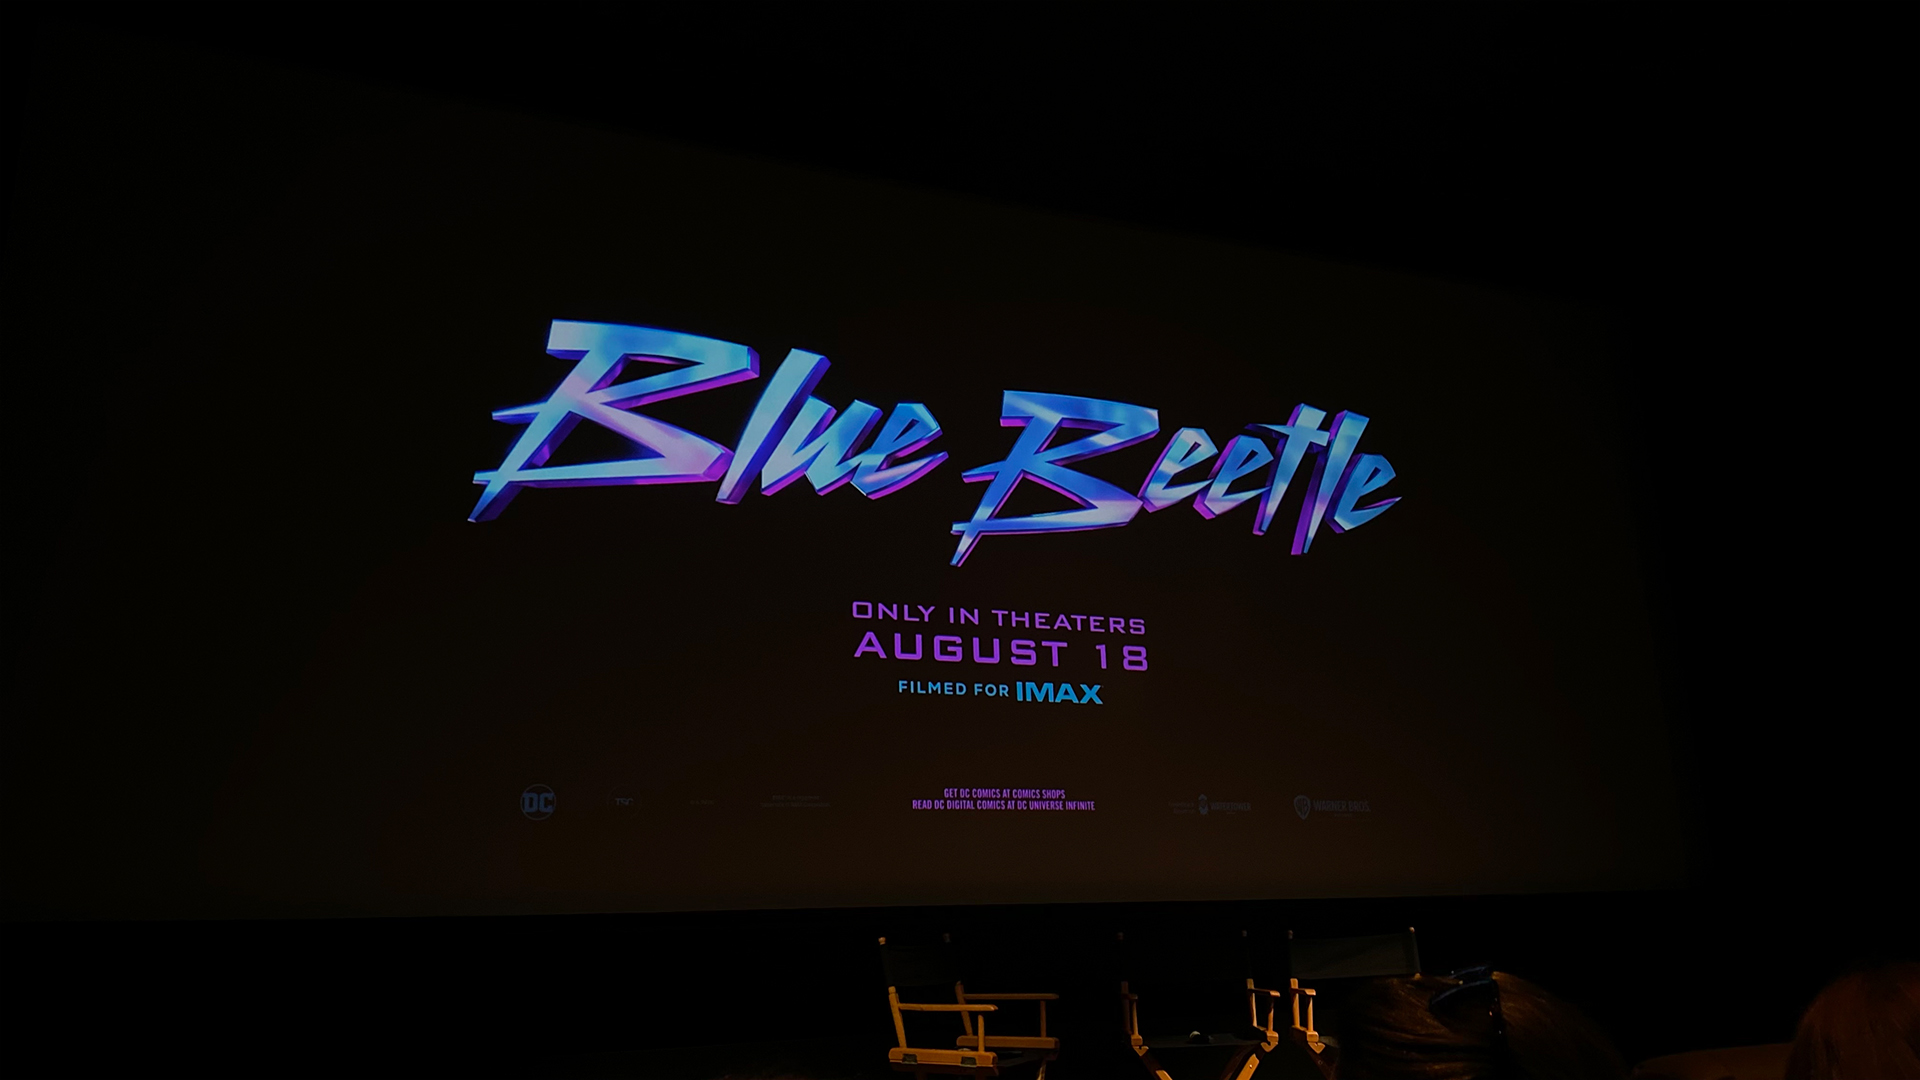 Blue Beetle - Trailer Teaser, film trailer